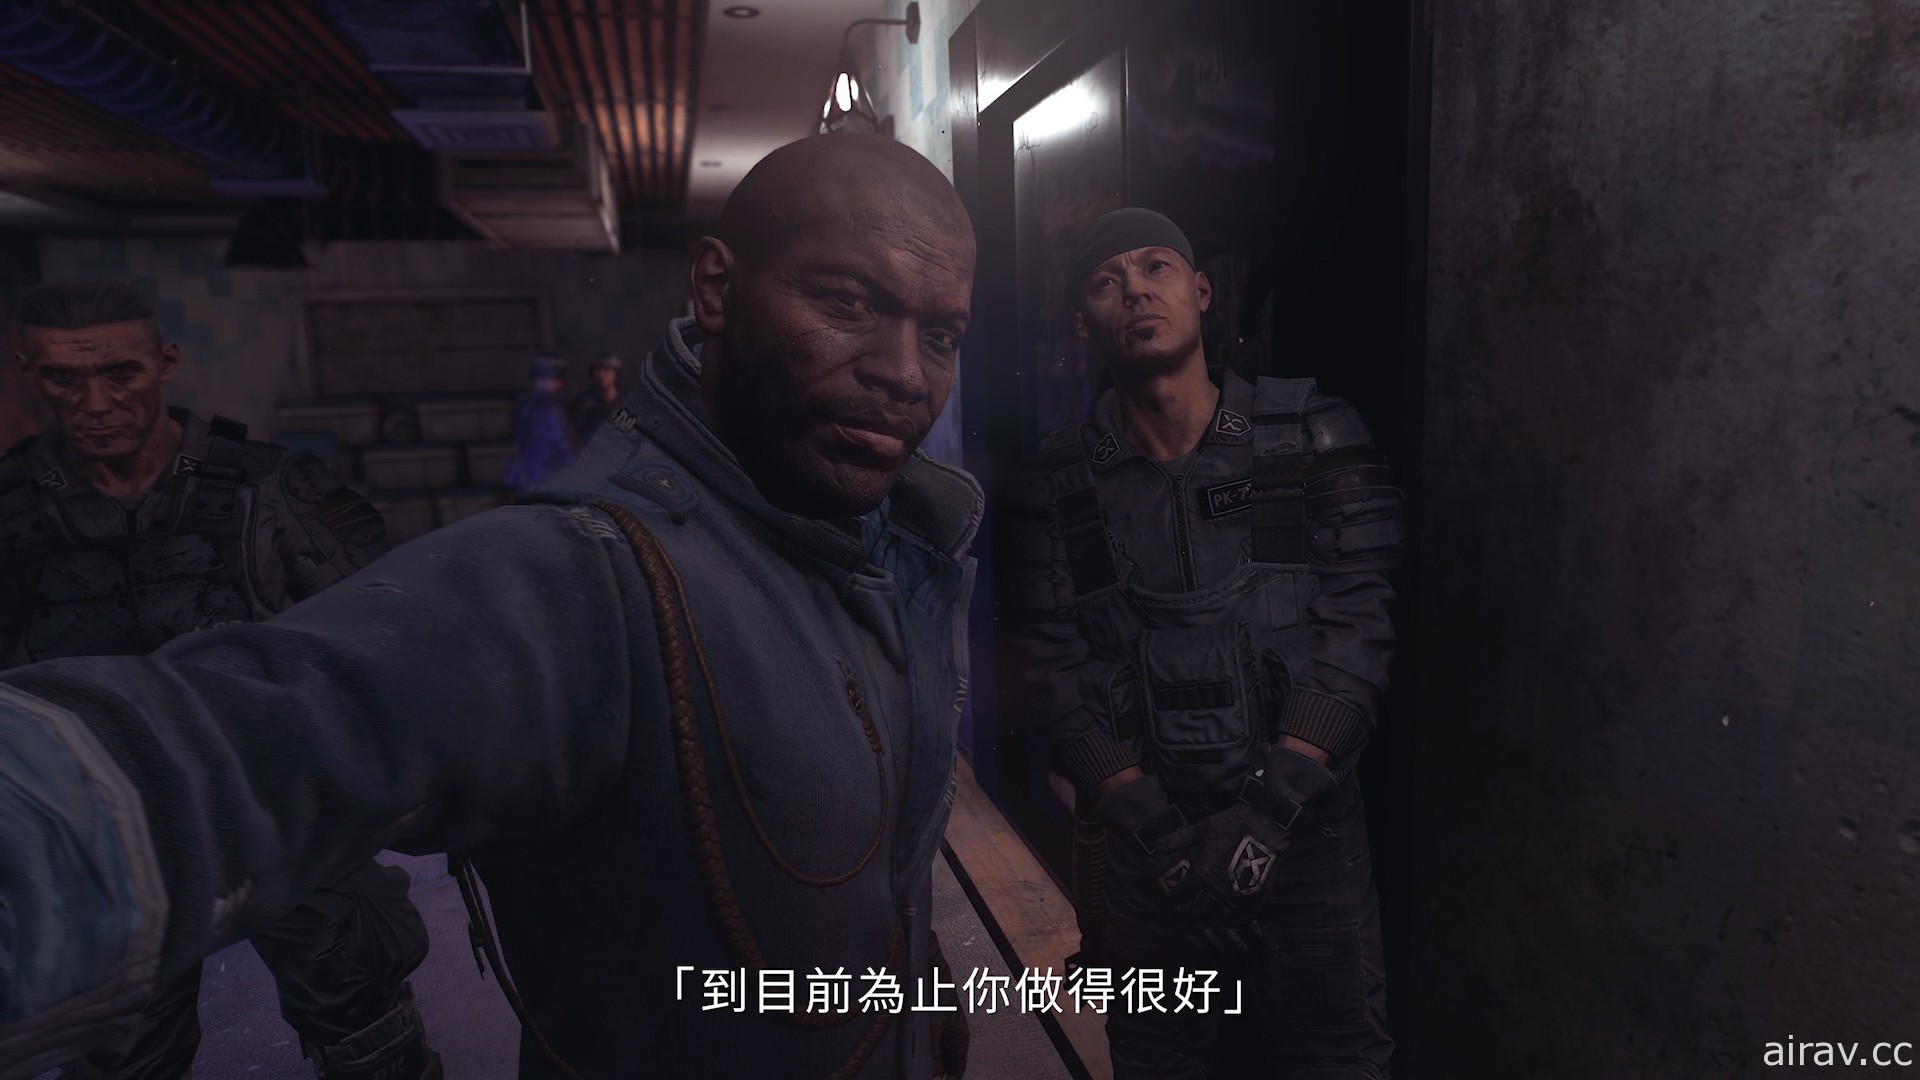 《垂死之光 2》釋出新遊戲實機影片「決定命運篇」 主角艾登日語配音由花輪英司演出